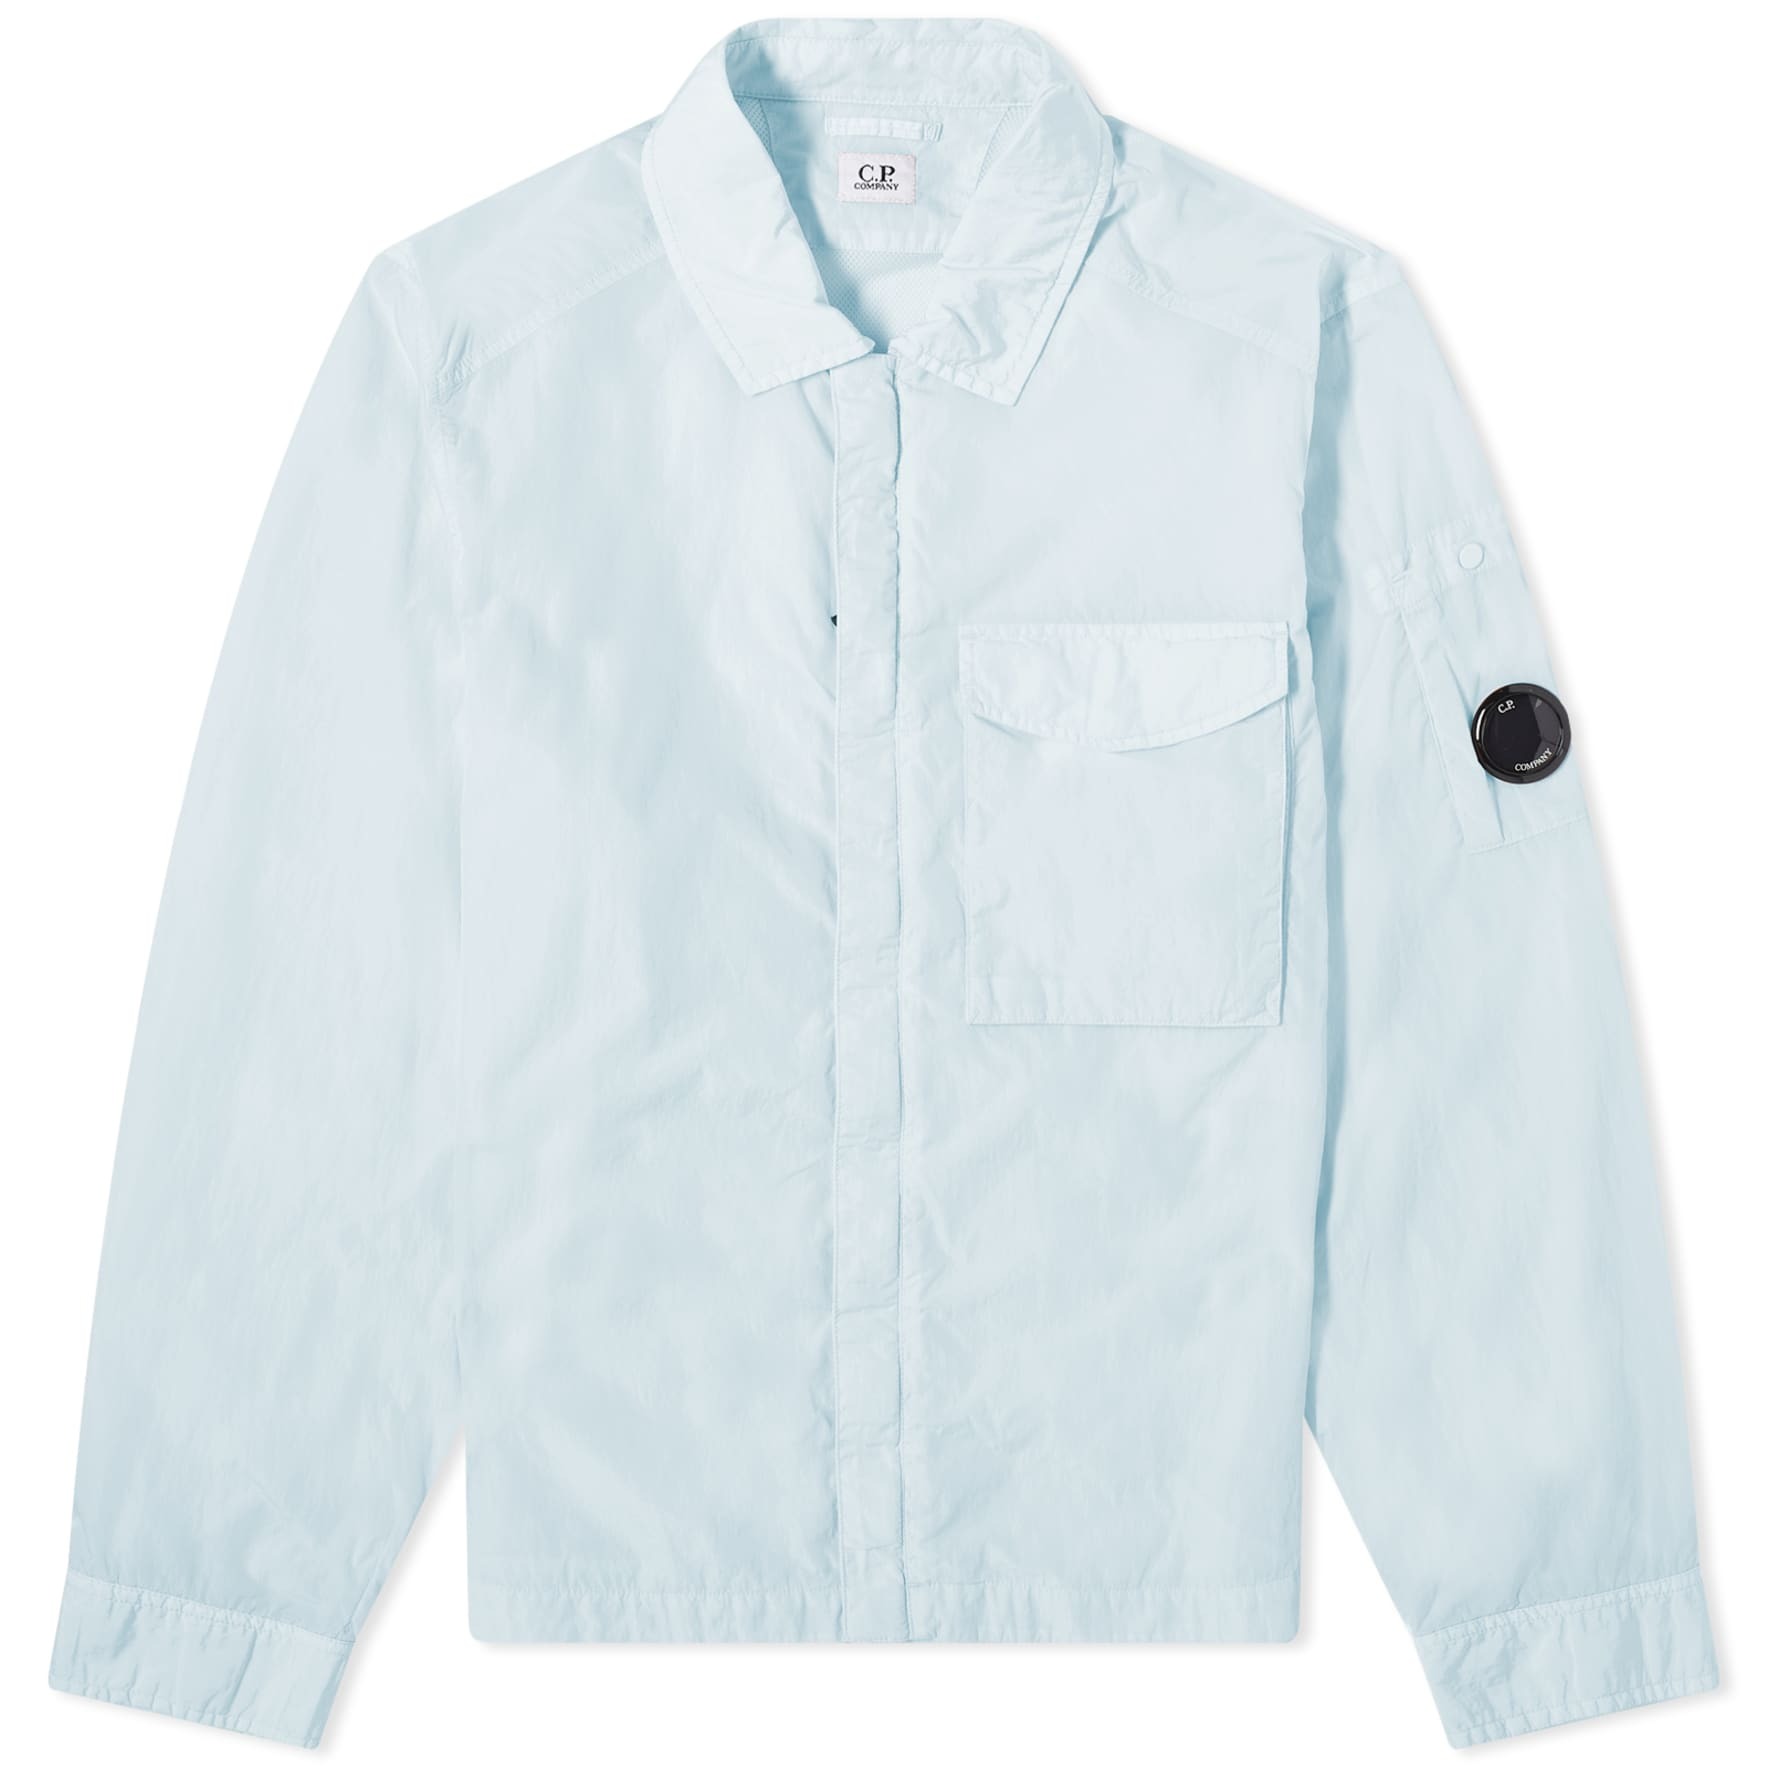 Куртка-рубашка C.P. Company Chrome-R Pocket, голубой куртка рубашка c p company chrome r pocket светло зеленый